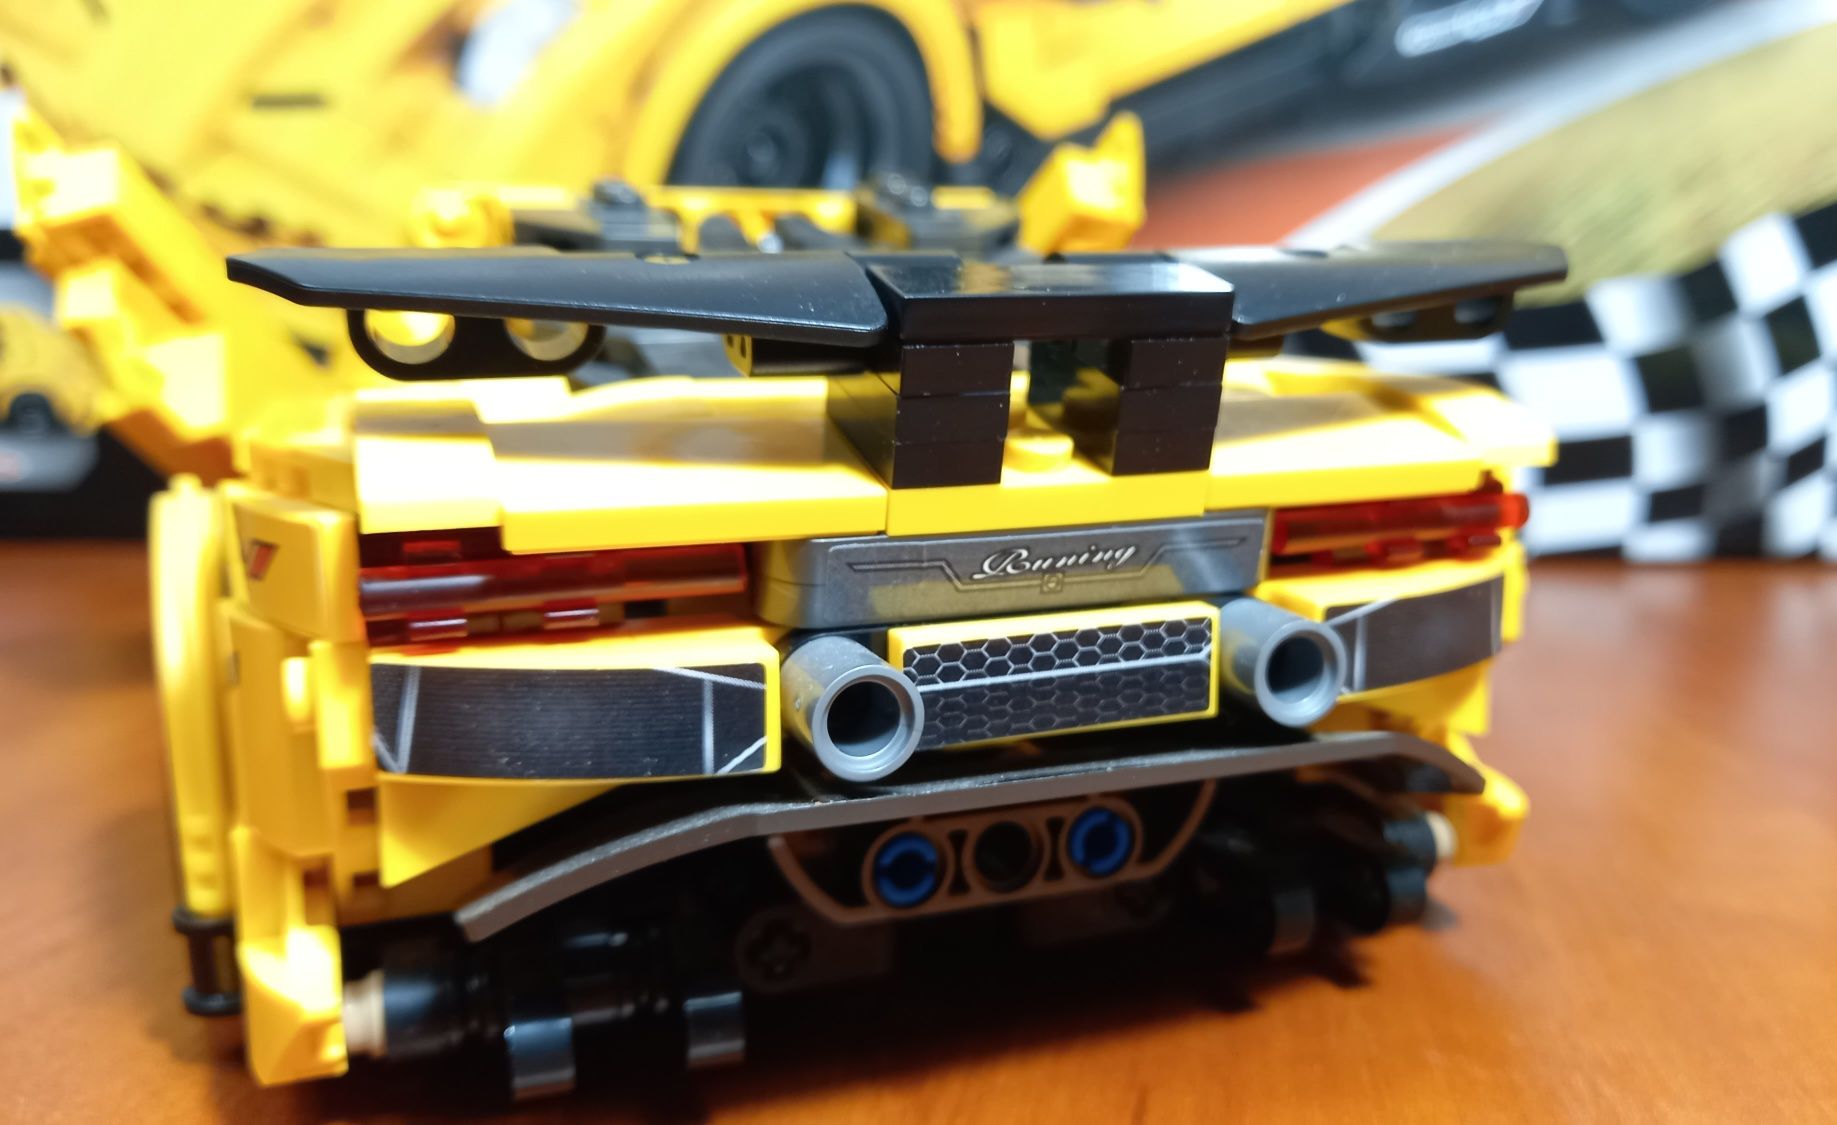 Лего набір Ламборгіні TurboCars.